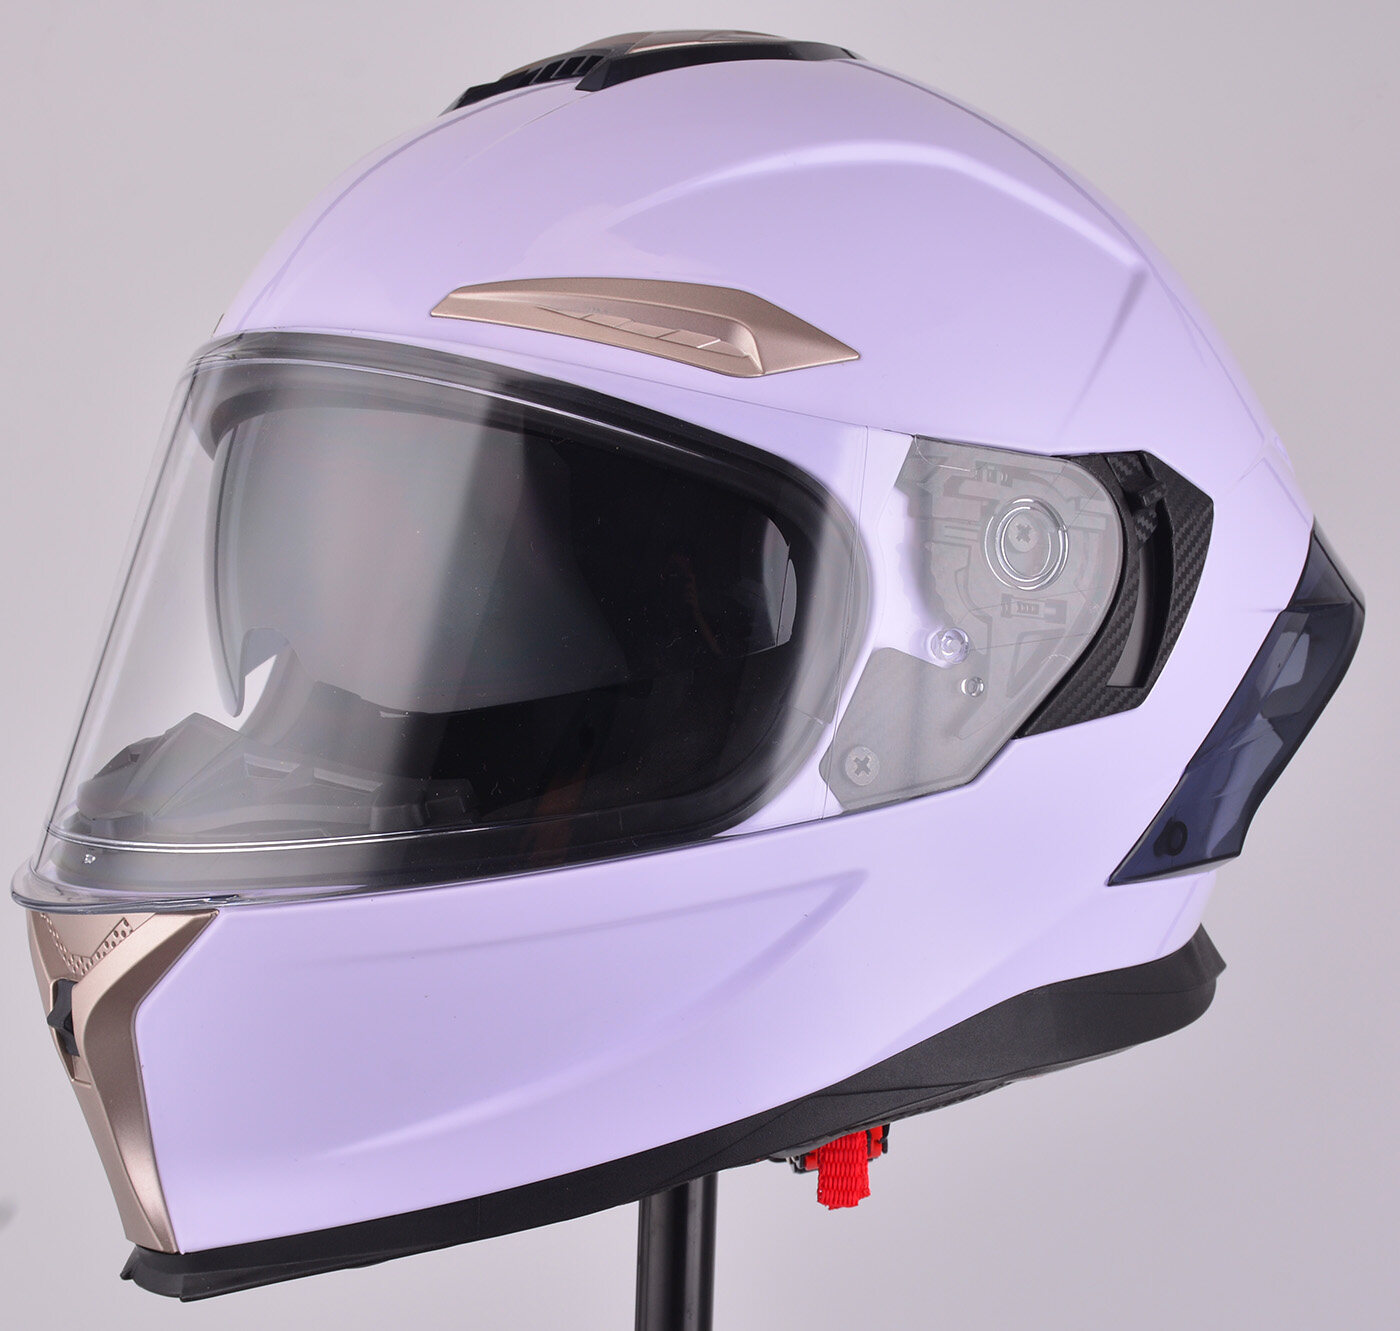 ABS Full Face Motorbike Helmet, ABS Motorbike Helmet exporter, ABS Helmet supplier, ABS Motorbike Helmet supplier, ABS Helmet wholesale